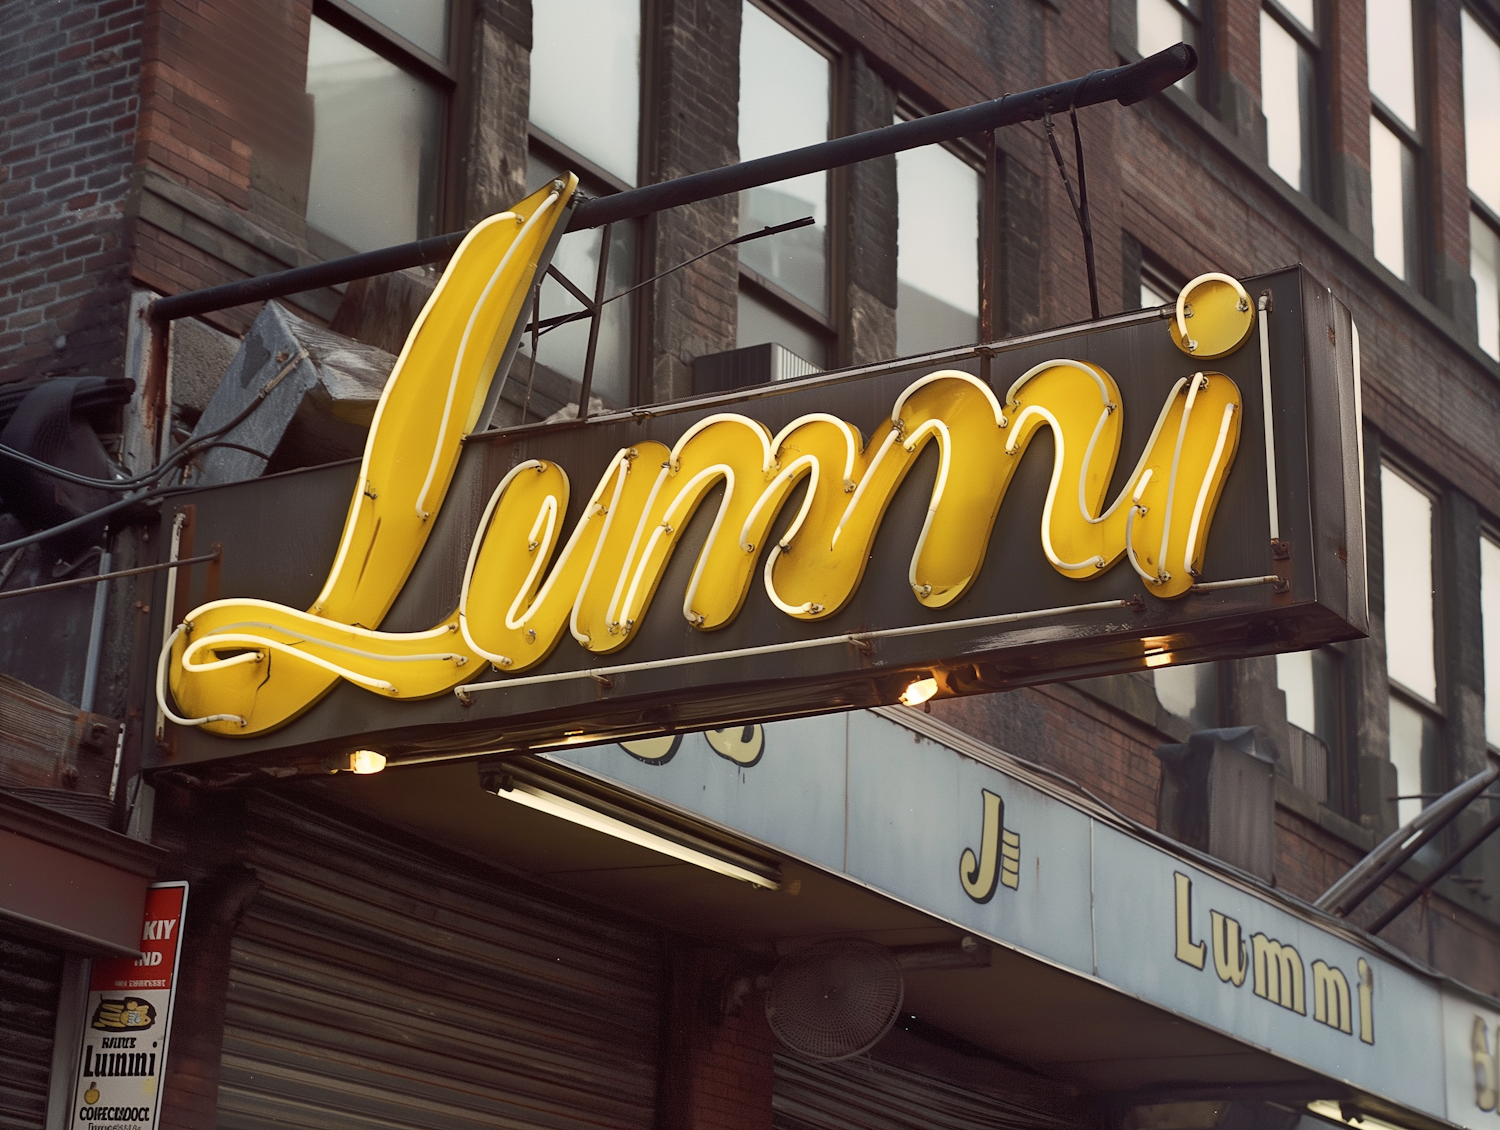 Lummi Neon Sign in Urban Setting